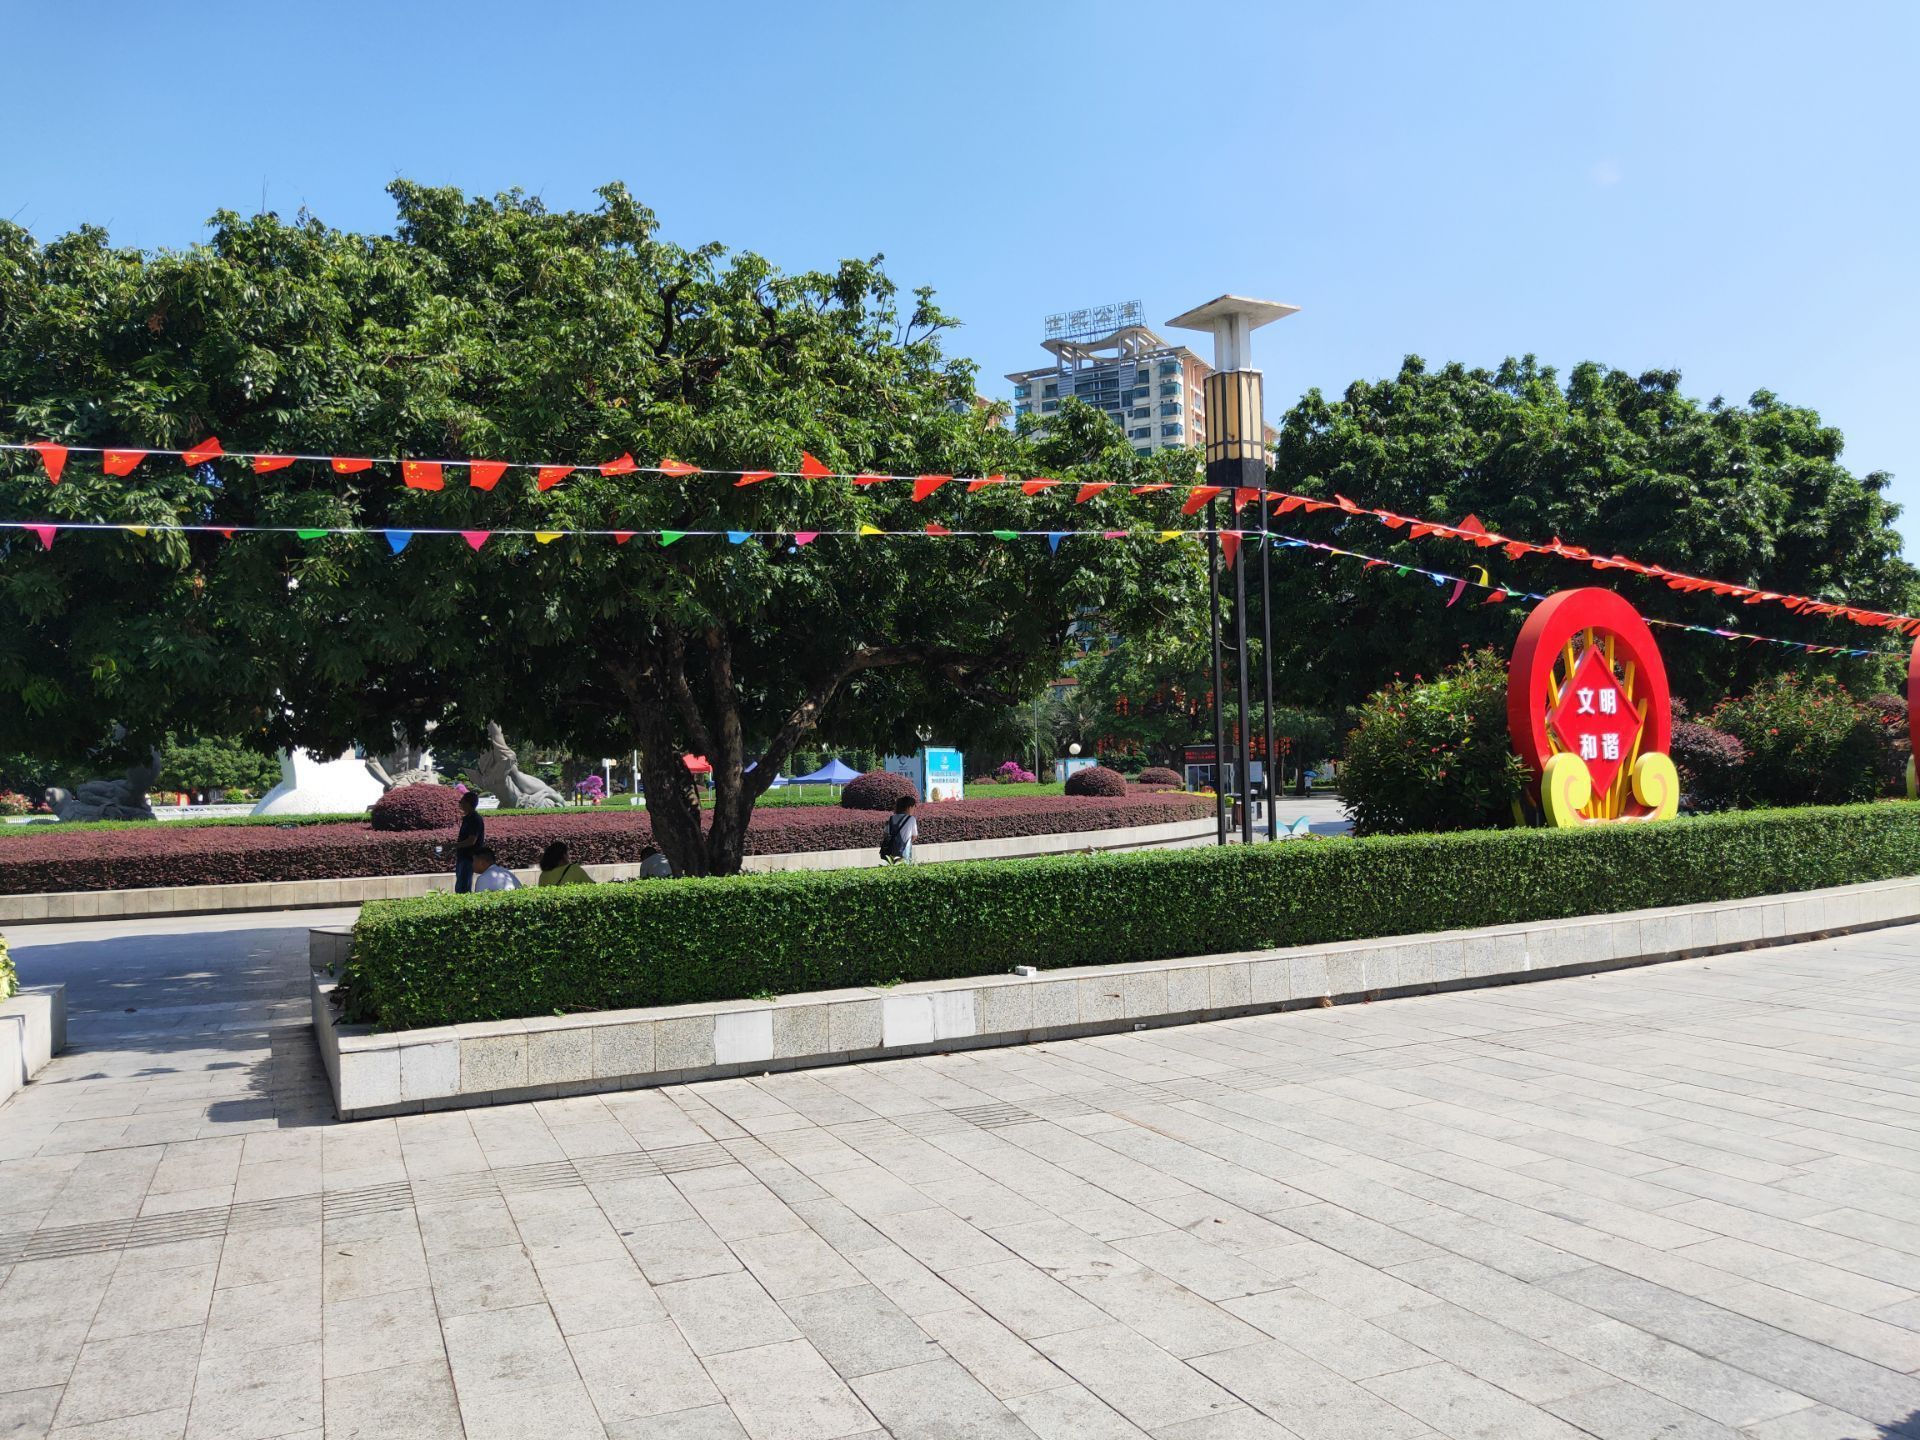 【携程攻略】广西北部湾广场景点,位于北部湾广场的雕塑“南珠魂”，与银滩上的钢雕“潮”遥首相望。北…